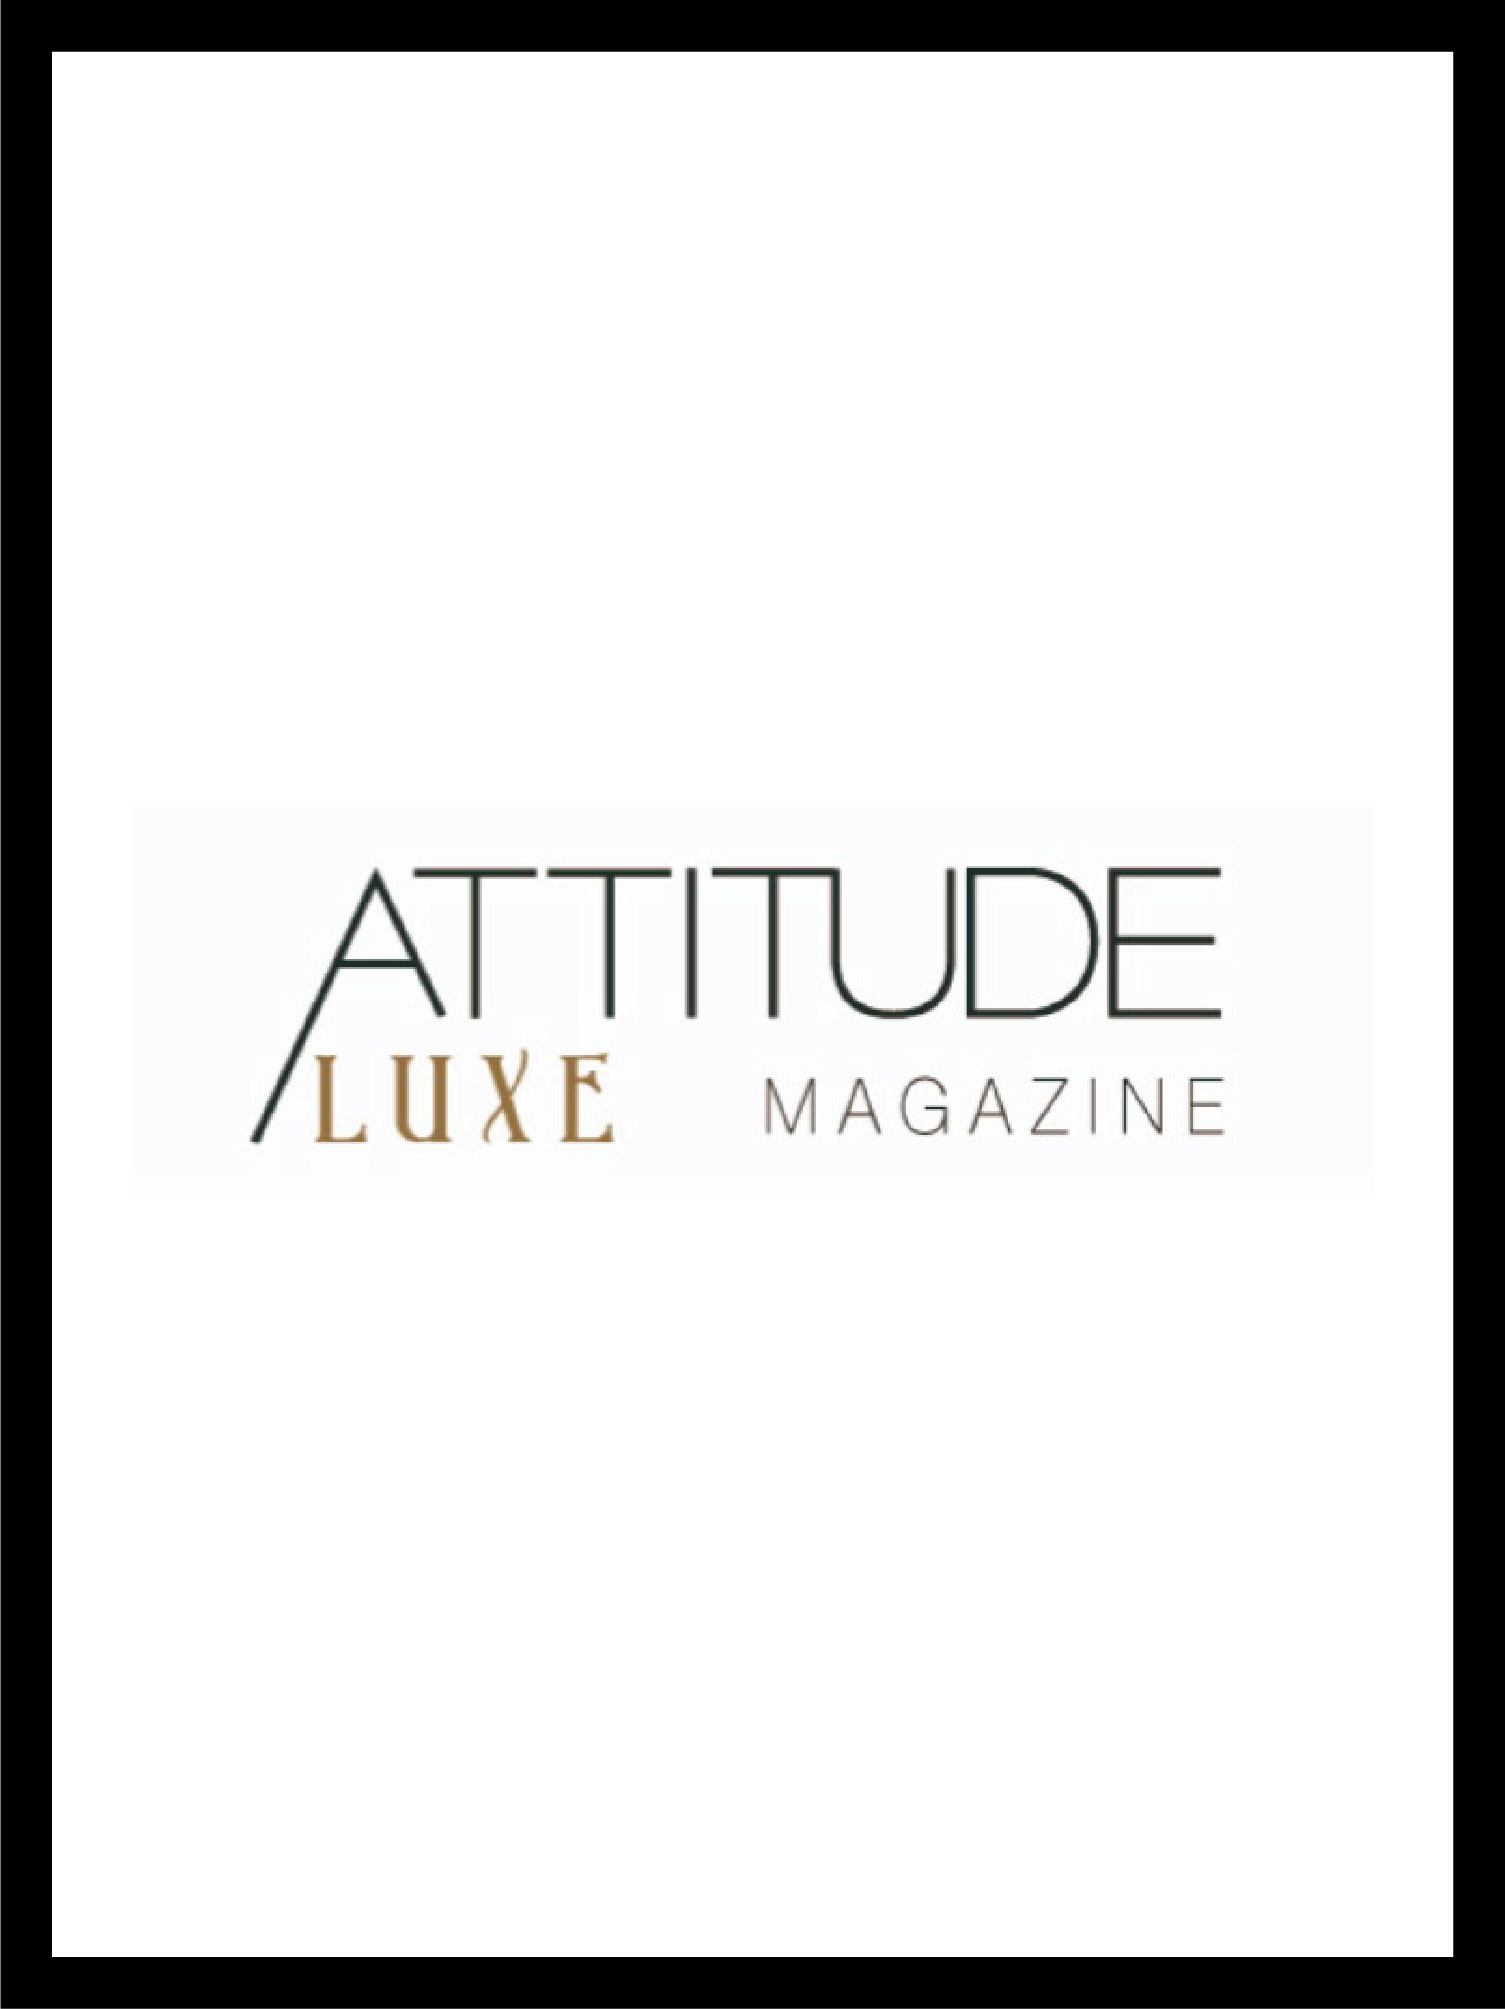 couverture et logo du magazine attitude luxe